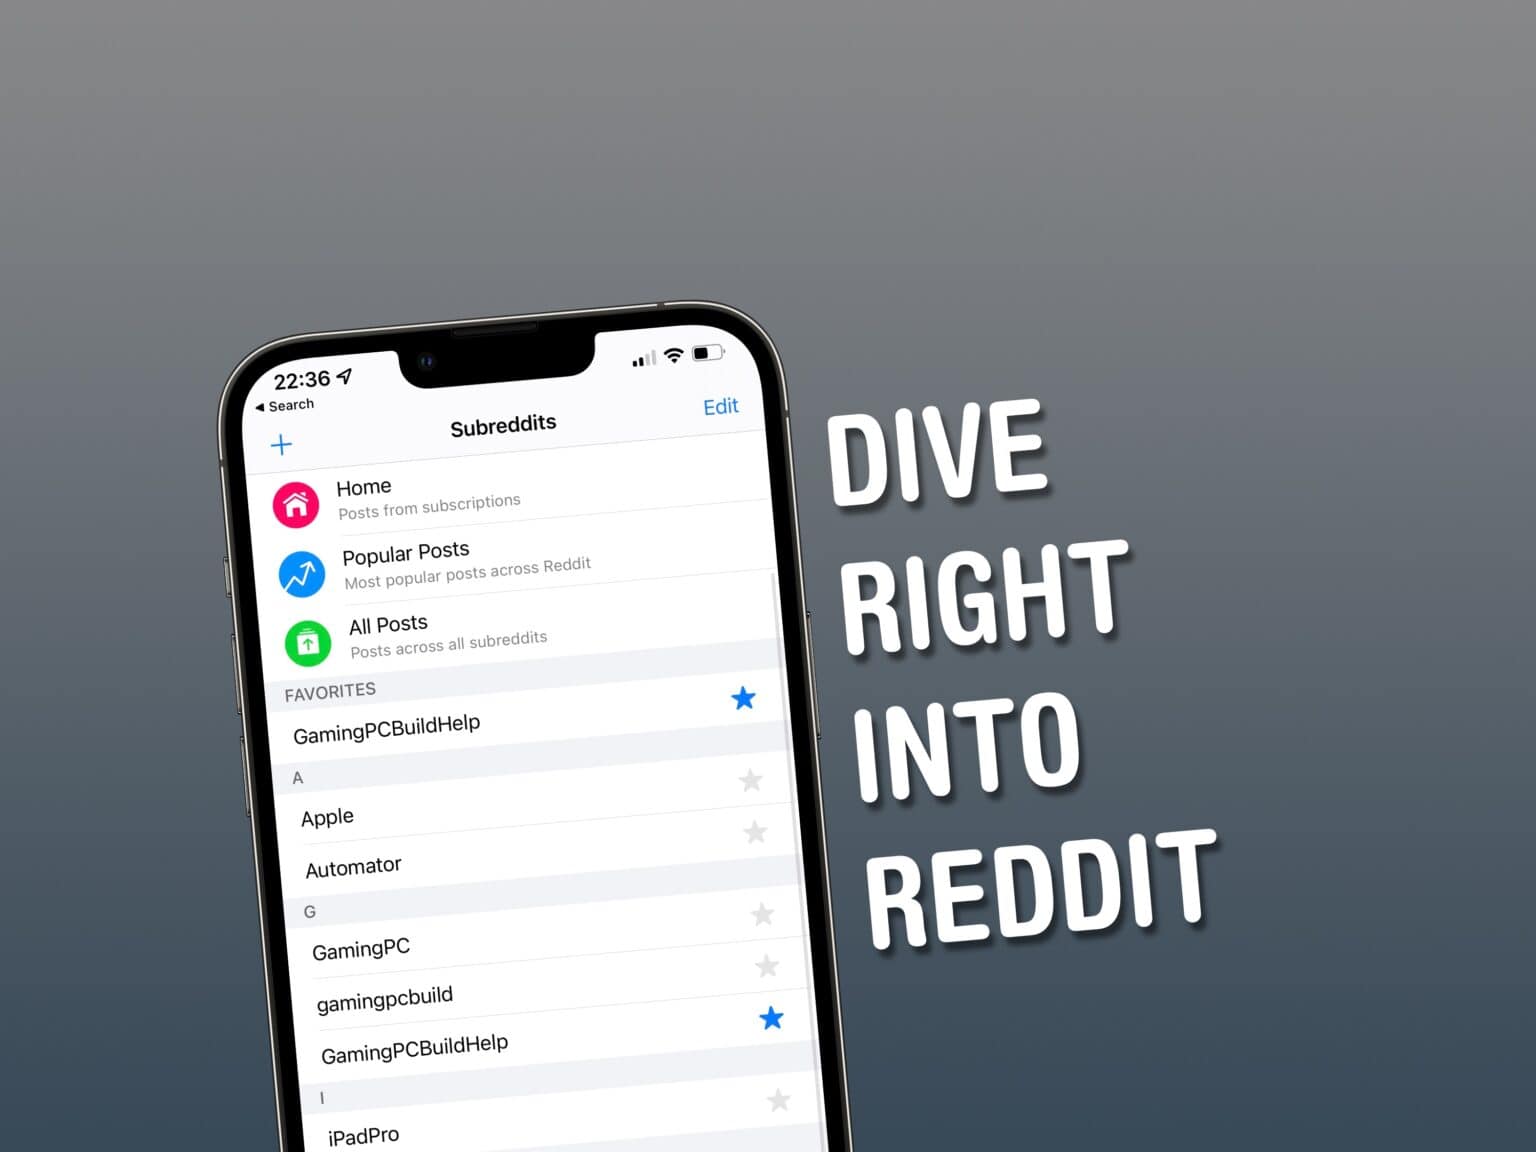 Apollo Reddit client on iPhone